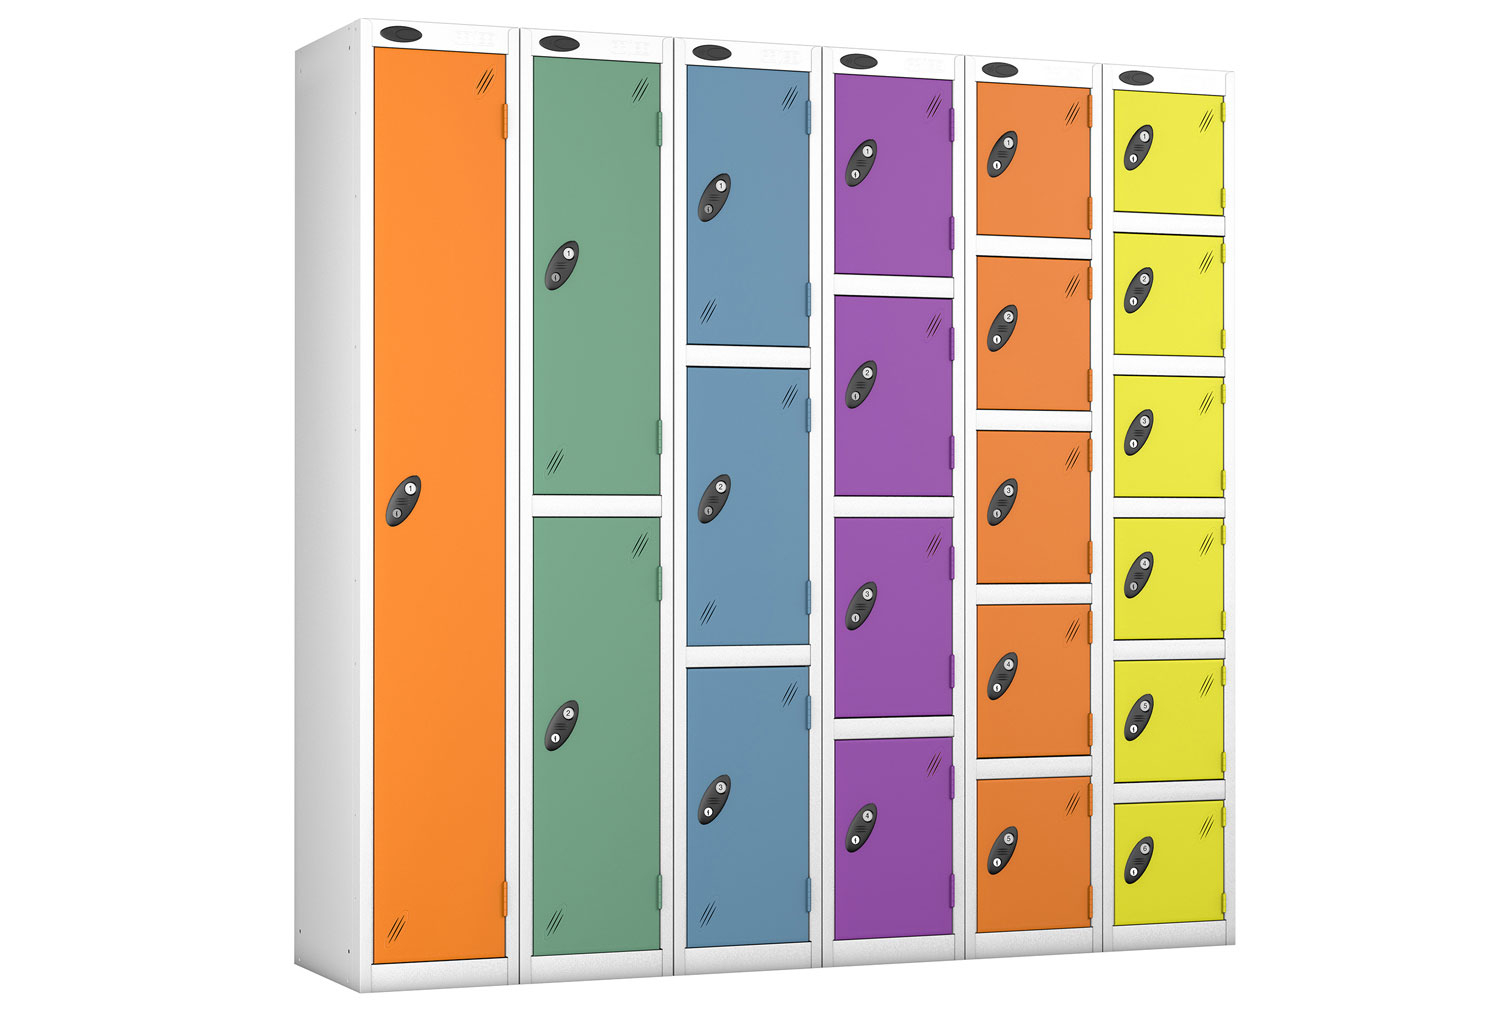 Probe Autumn Colour Lockers With White Body, 2 Doors, 31wx46dx178h (cm), Cam Lock, White Body, Jade Doors